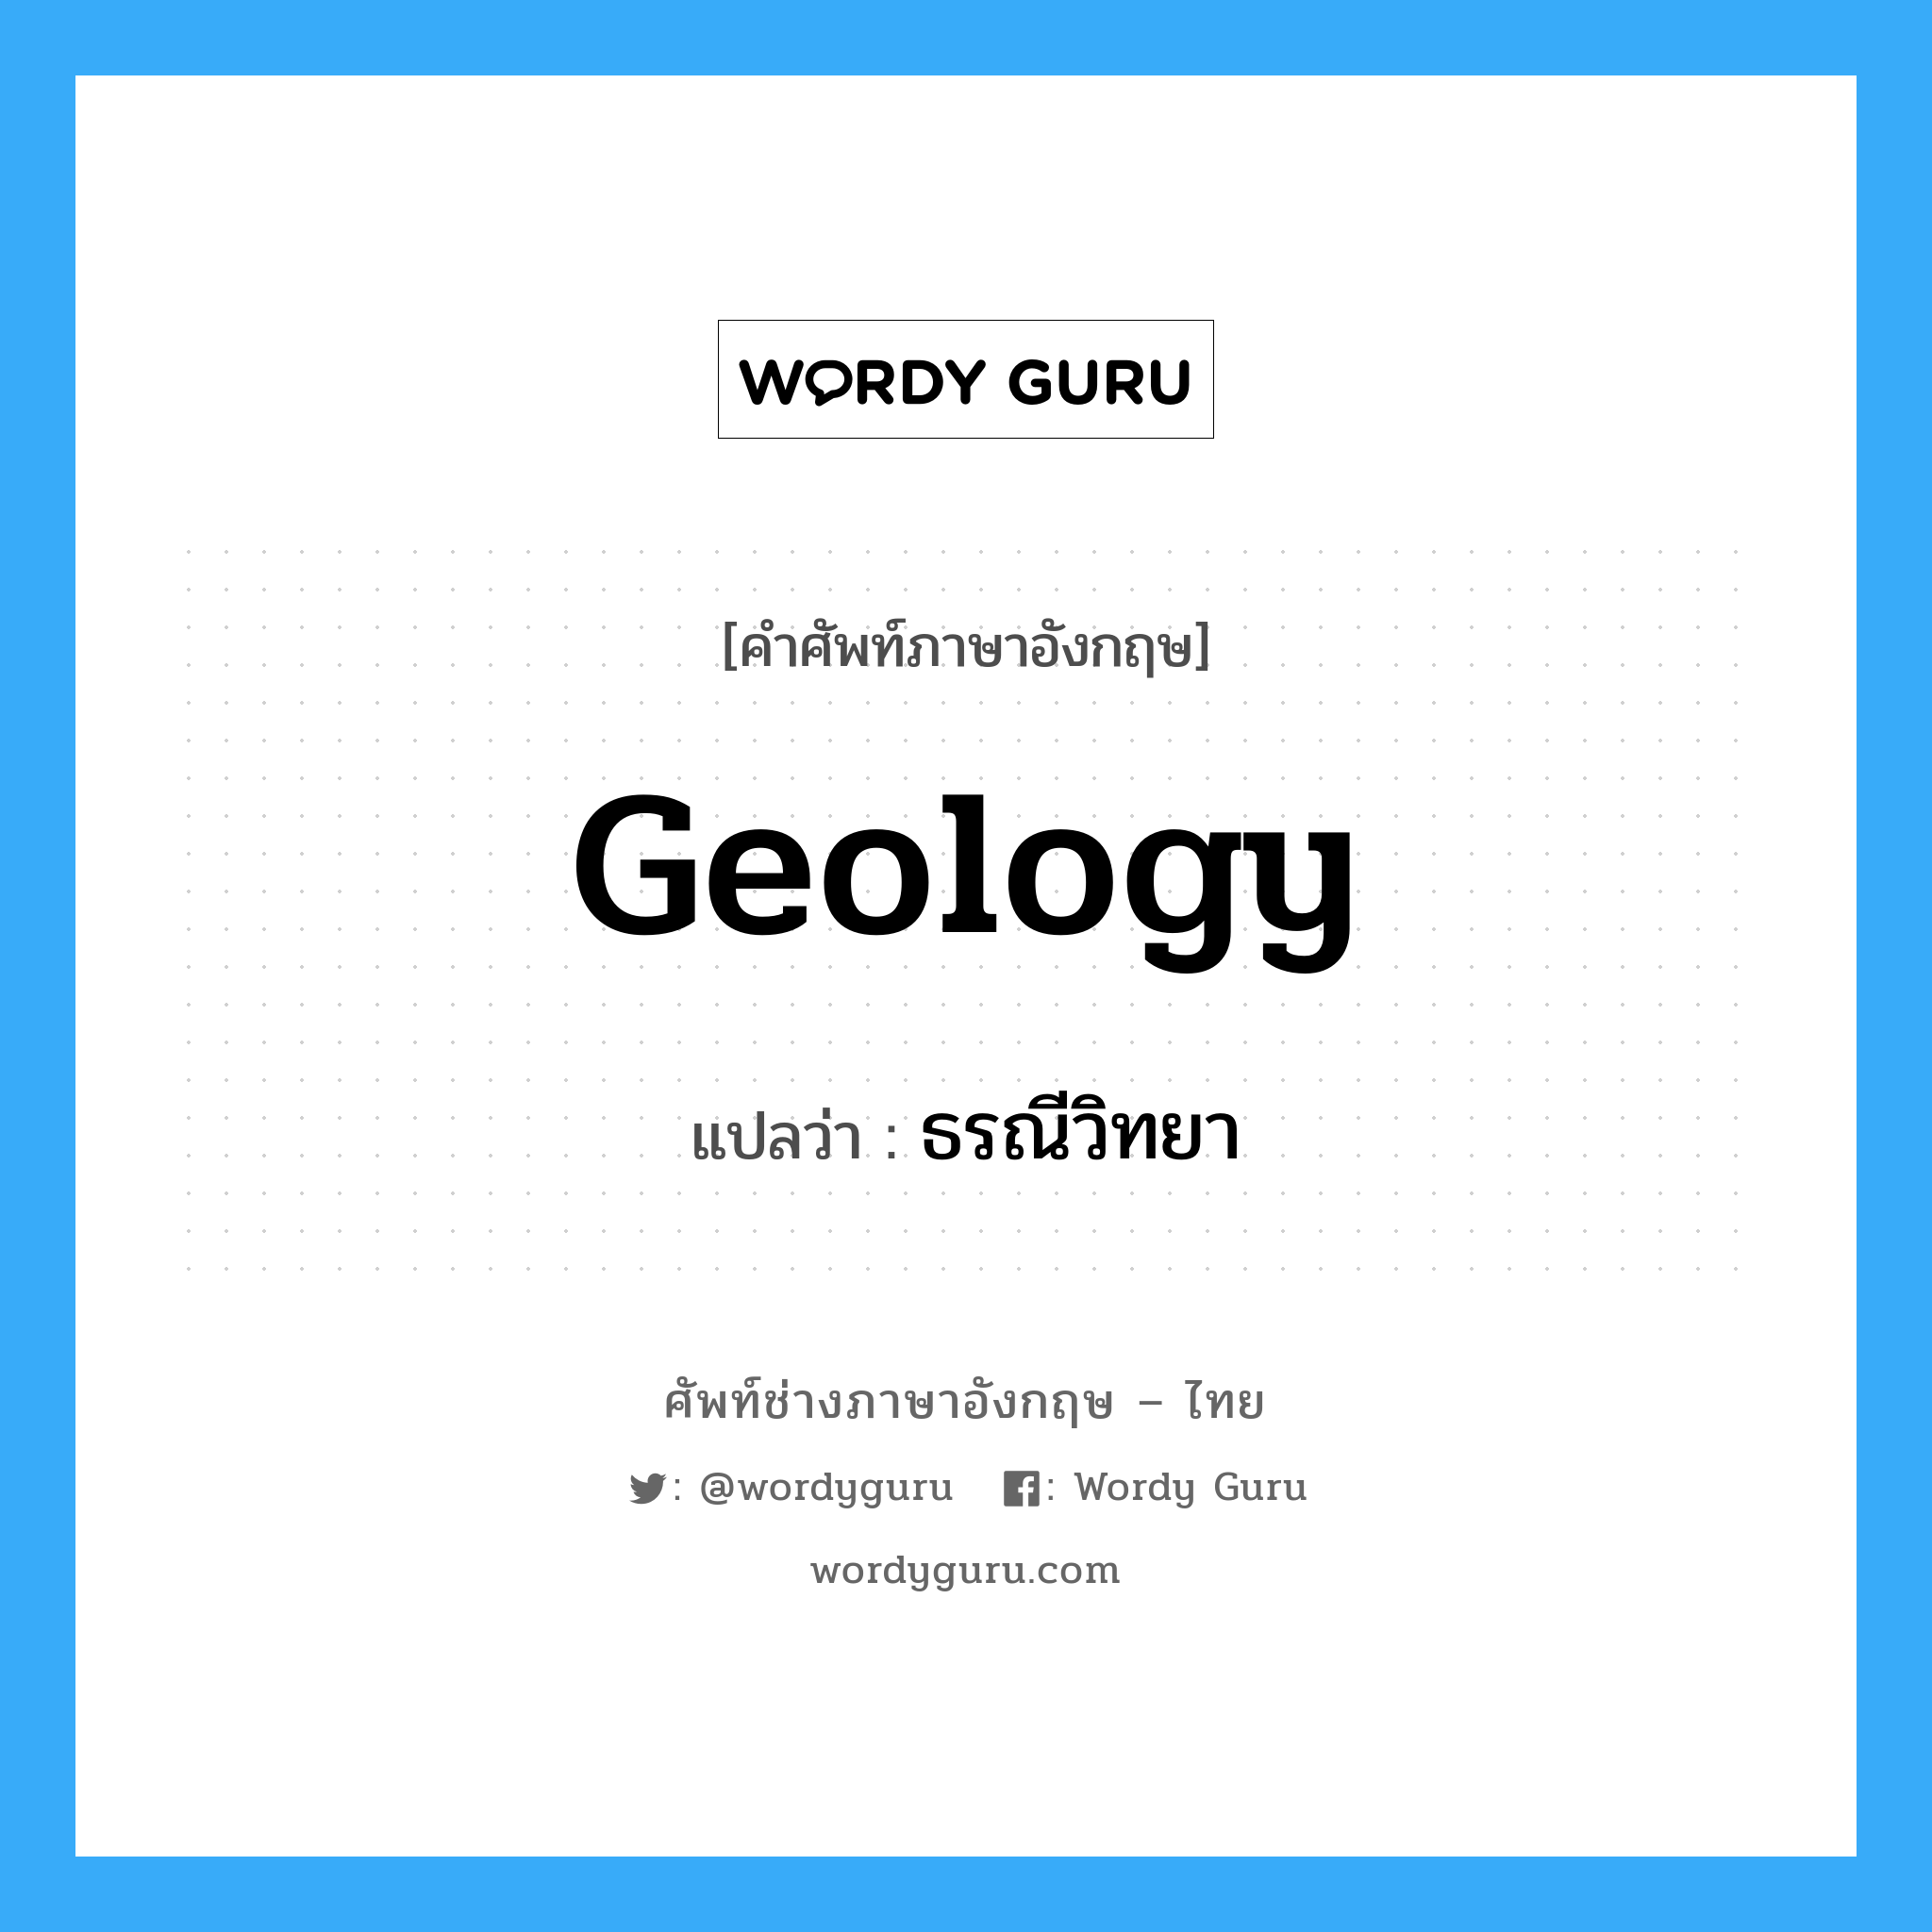 ธรณีวิทยา ภาษาอังกฤษ?, คำศัพท์ช่างภาษาอังกฤษ - ไทย ธรณีวิทยา คำศัพท์ภาษาอังกฤษ ธรณีวิทยา แปลว่า geology